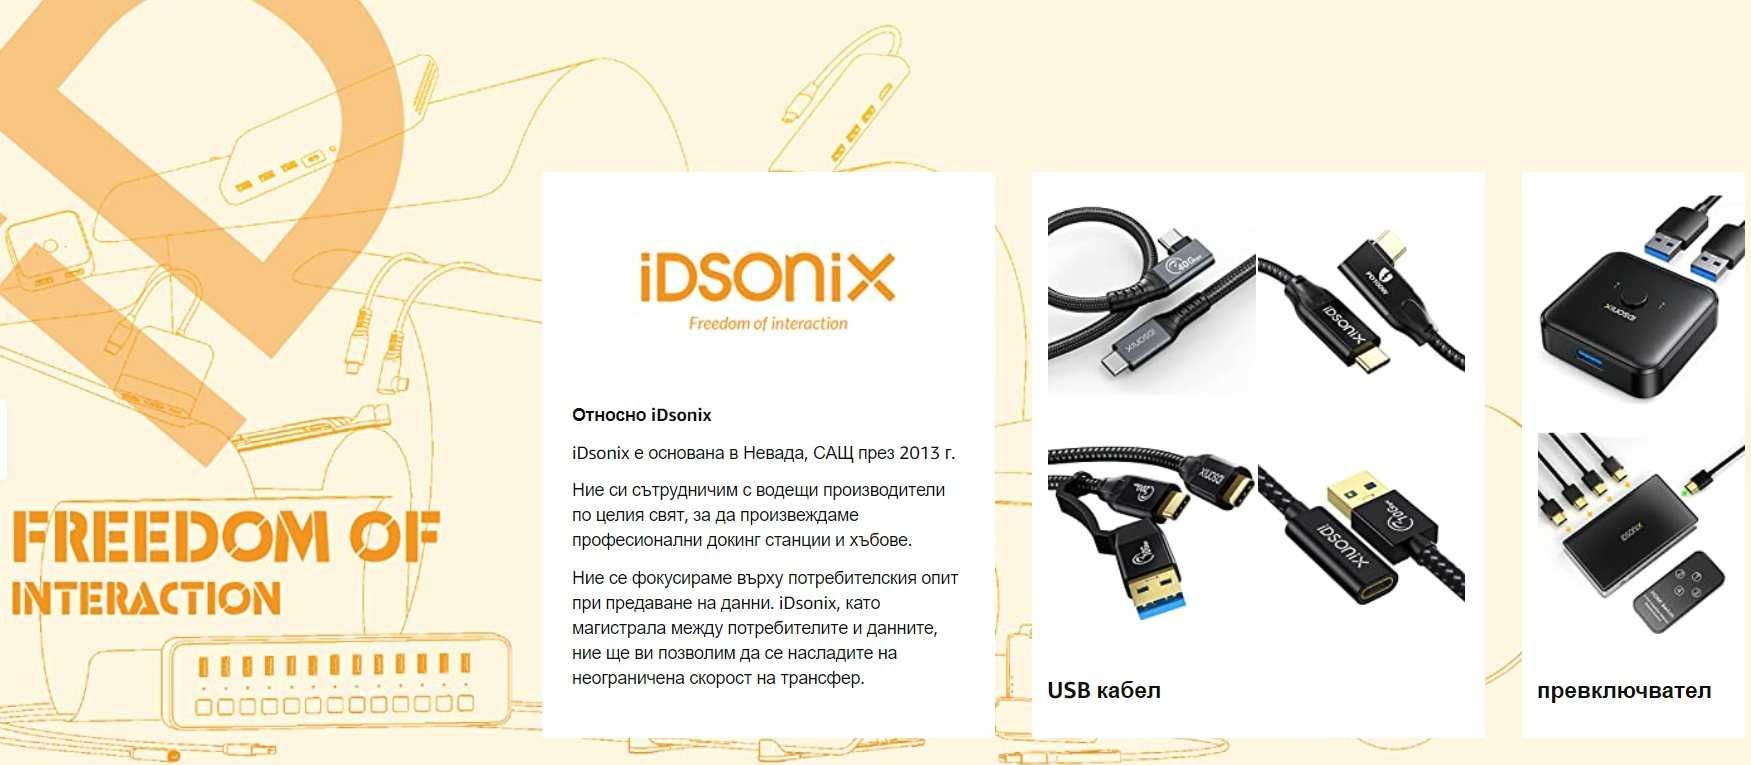 IDSONIX USB 3.0 хъб, 4-портов с 1 Type-C 5V/2A Type-C 5V/2A